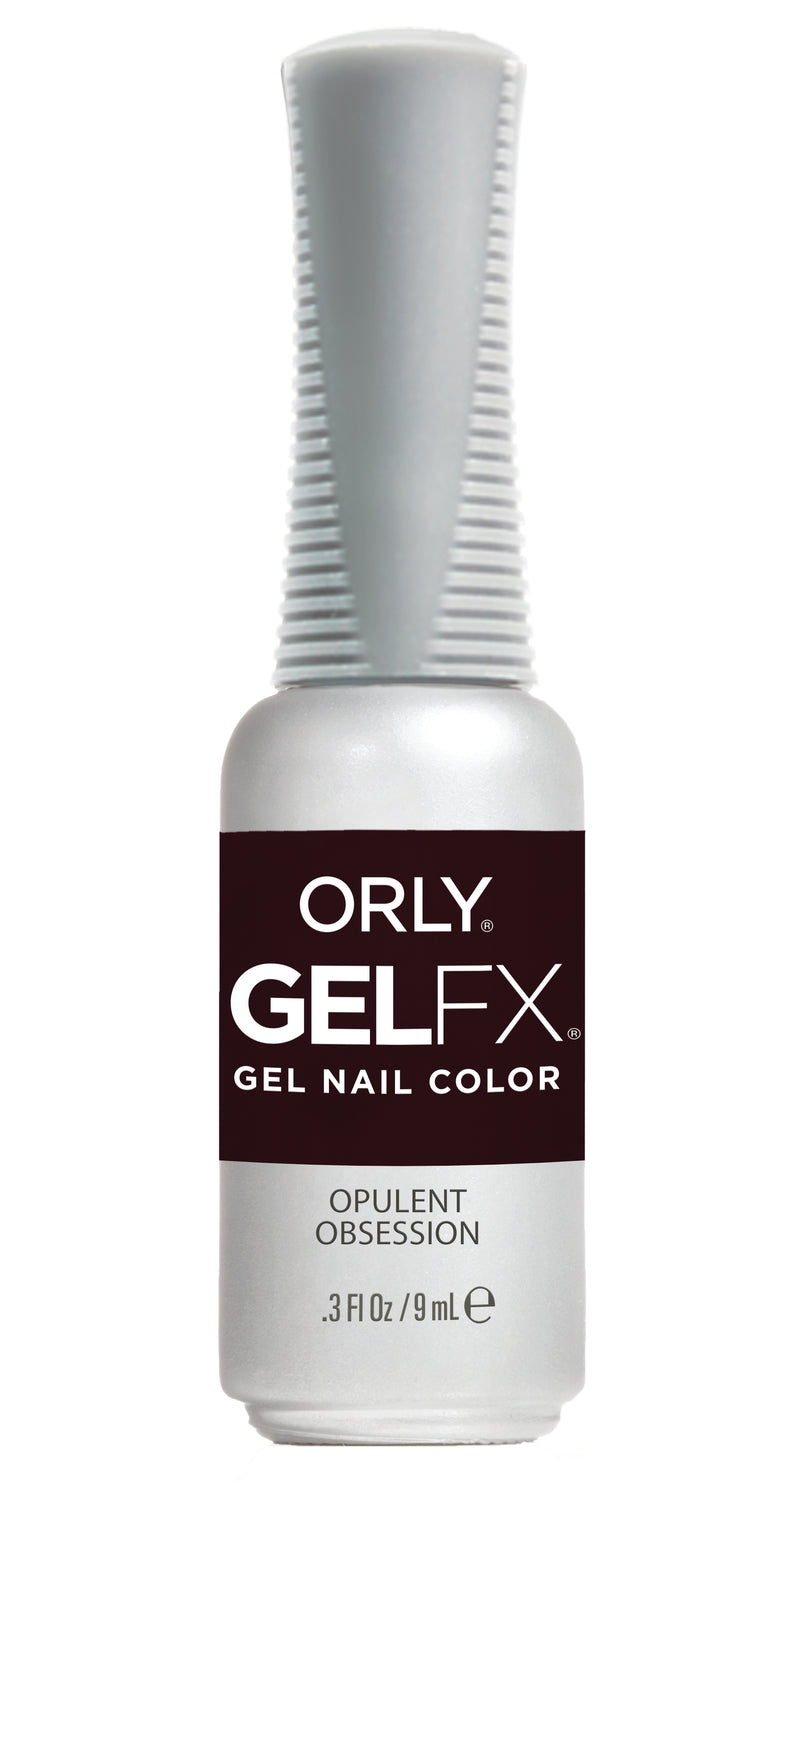 Orly Gel FX - Opulent Obsession Gel Polish